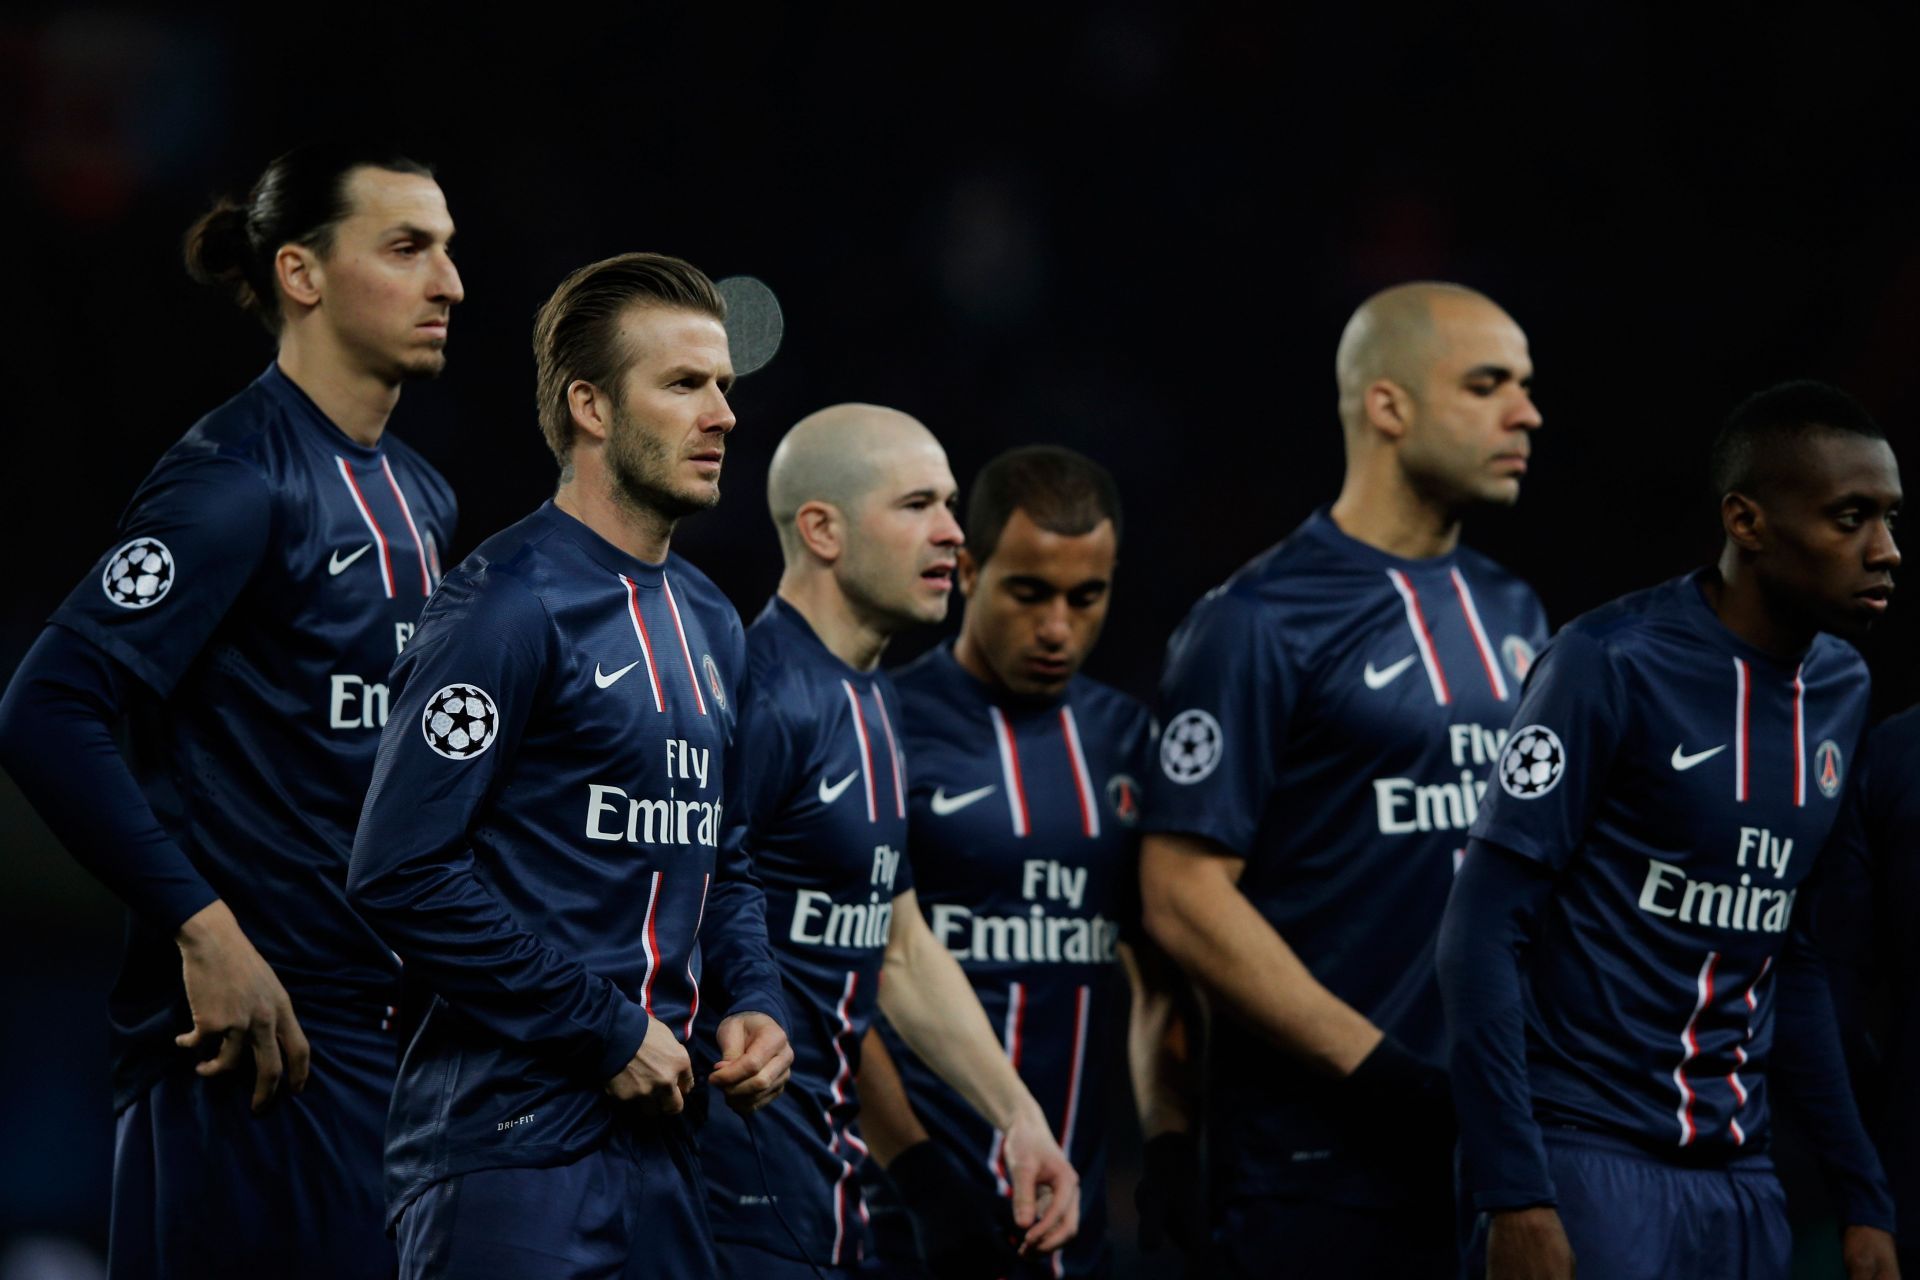 Paris St Germain v Barcelona - UEFA Champions League Quarter Final